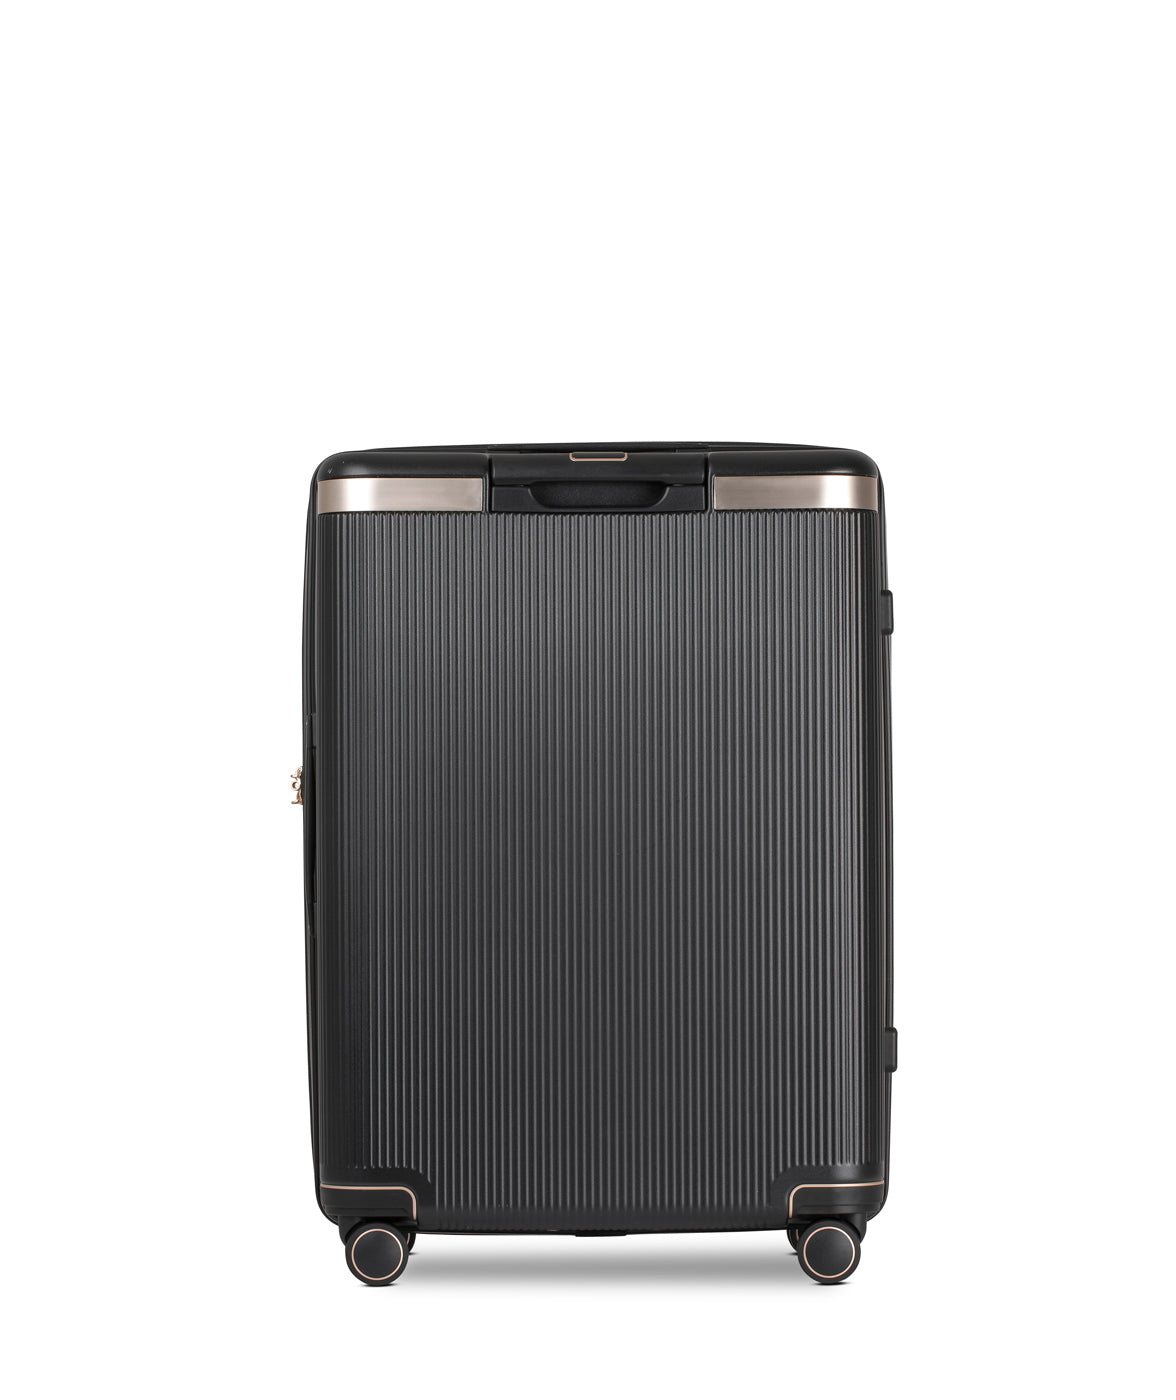 Echolac Dynasty Suitcase, Medium 67 cm, Black von Hinten 